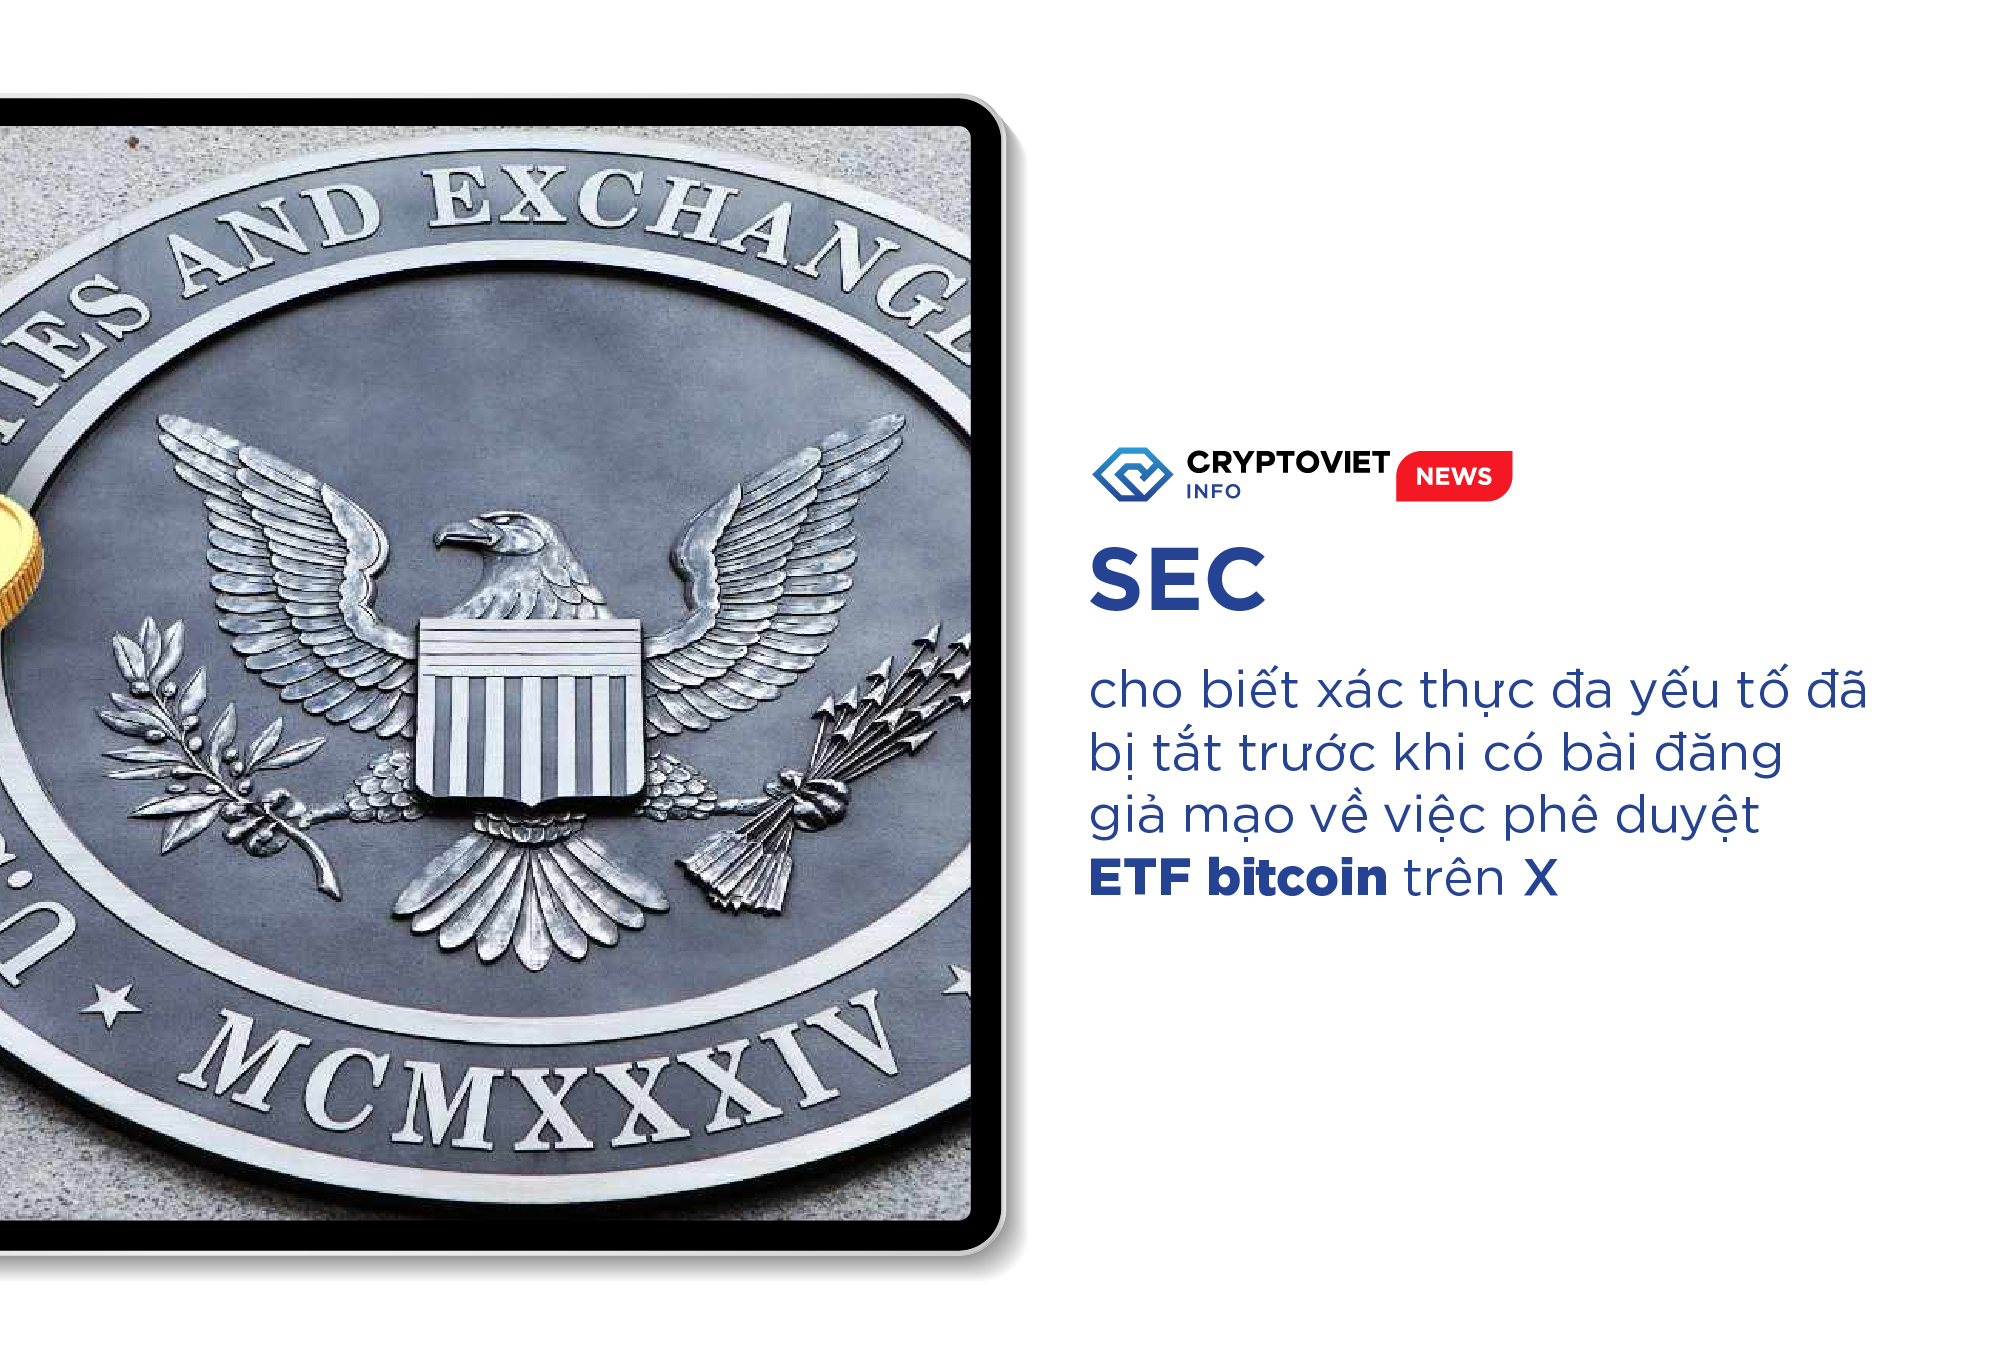 SEC cho biết xác thực đa yếu tố đã bị tắt trước khi có bài đăng giả mạo về việc phê duyệt ETF bitcoin trên X